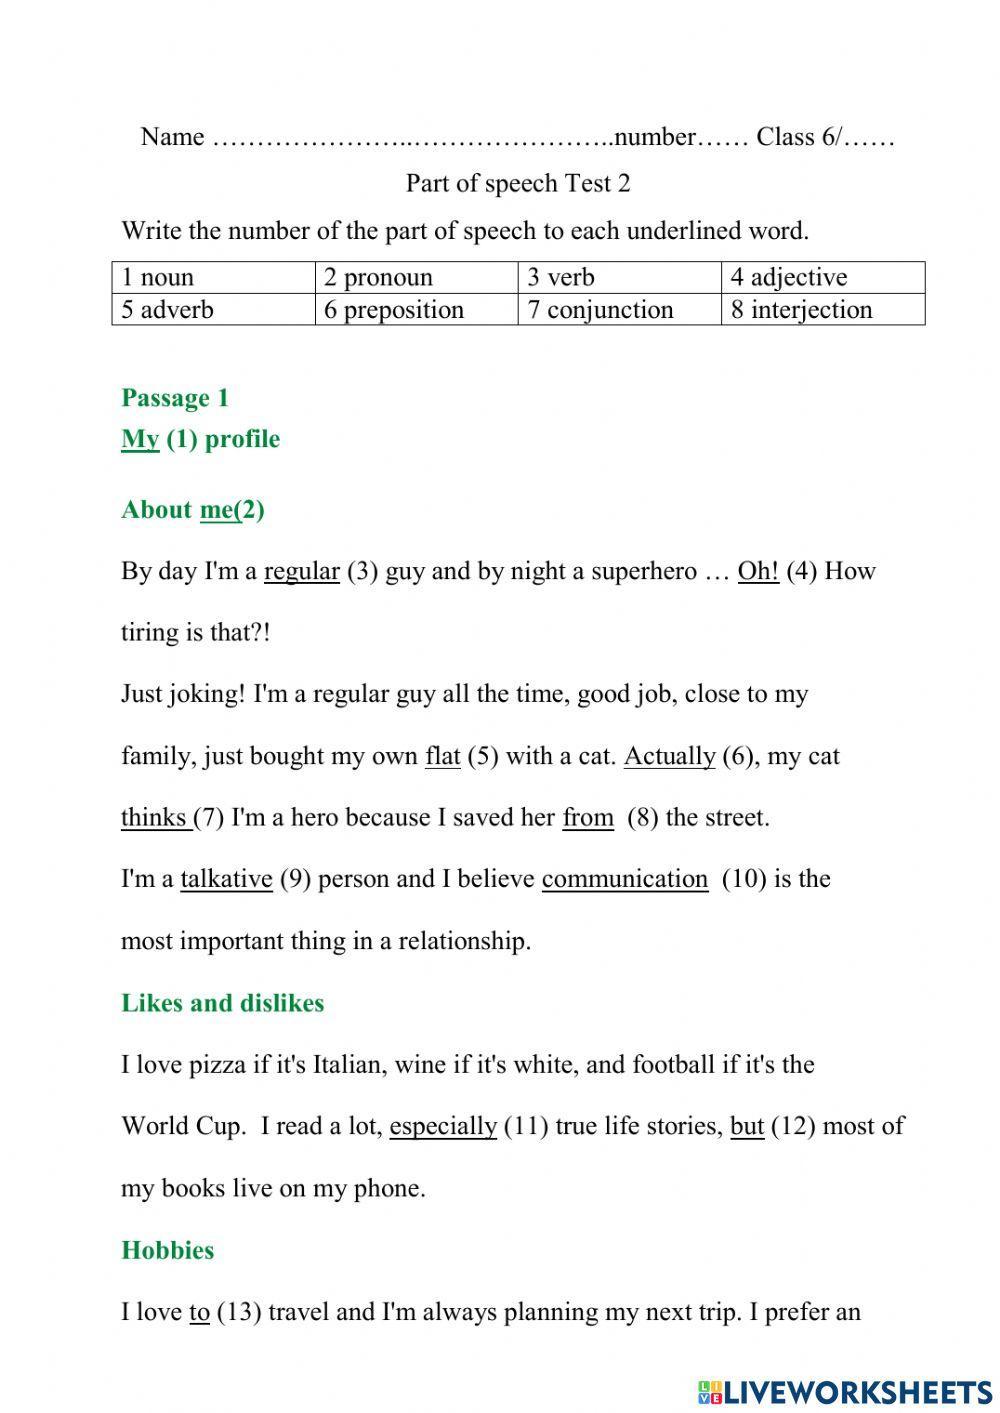 Part of speech test2